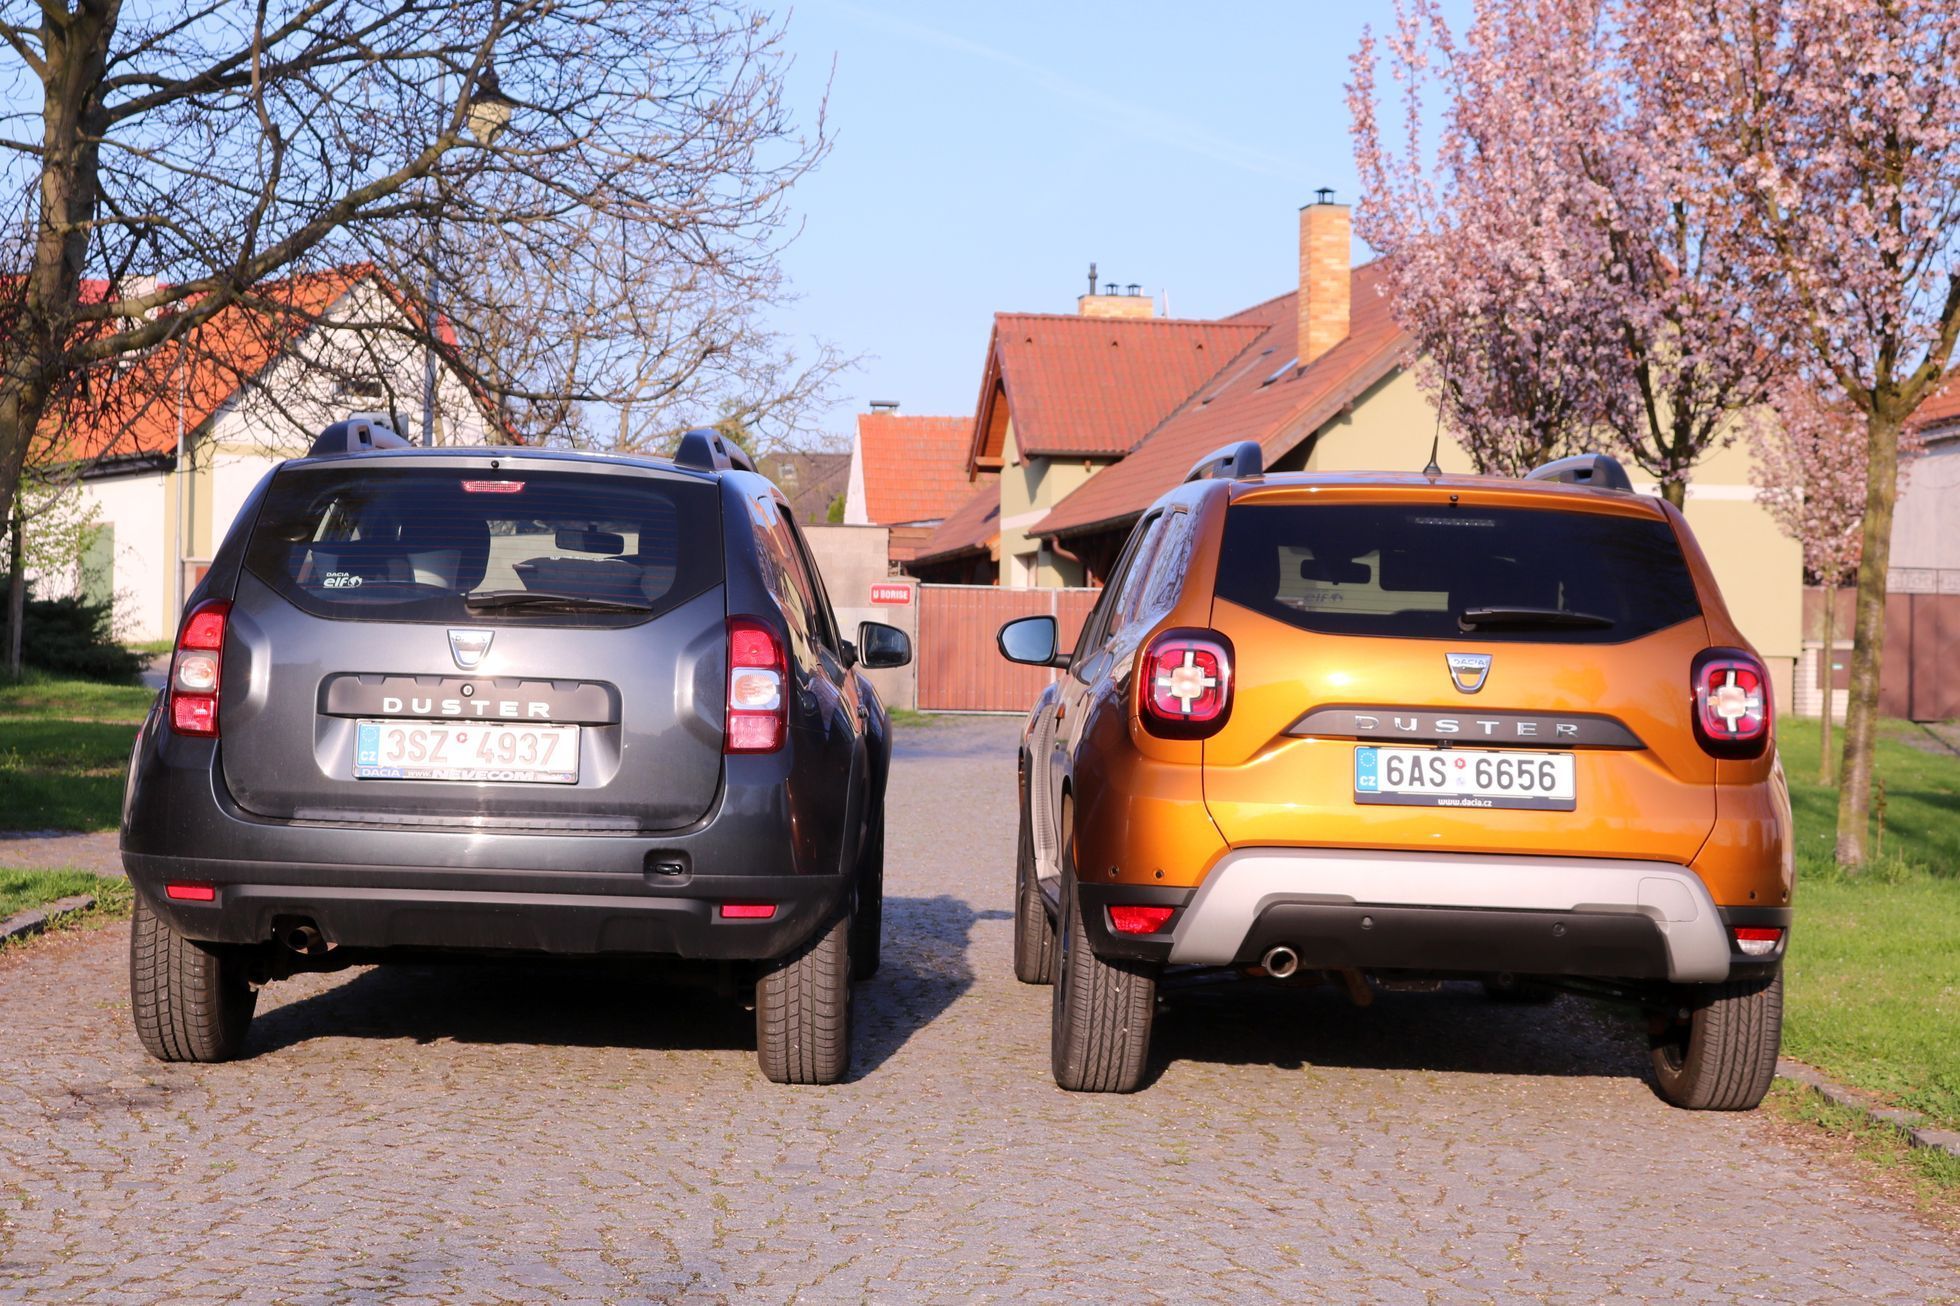 Srovnání Dacia Duster stará vs. nová